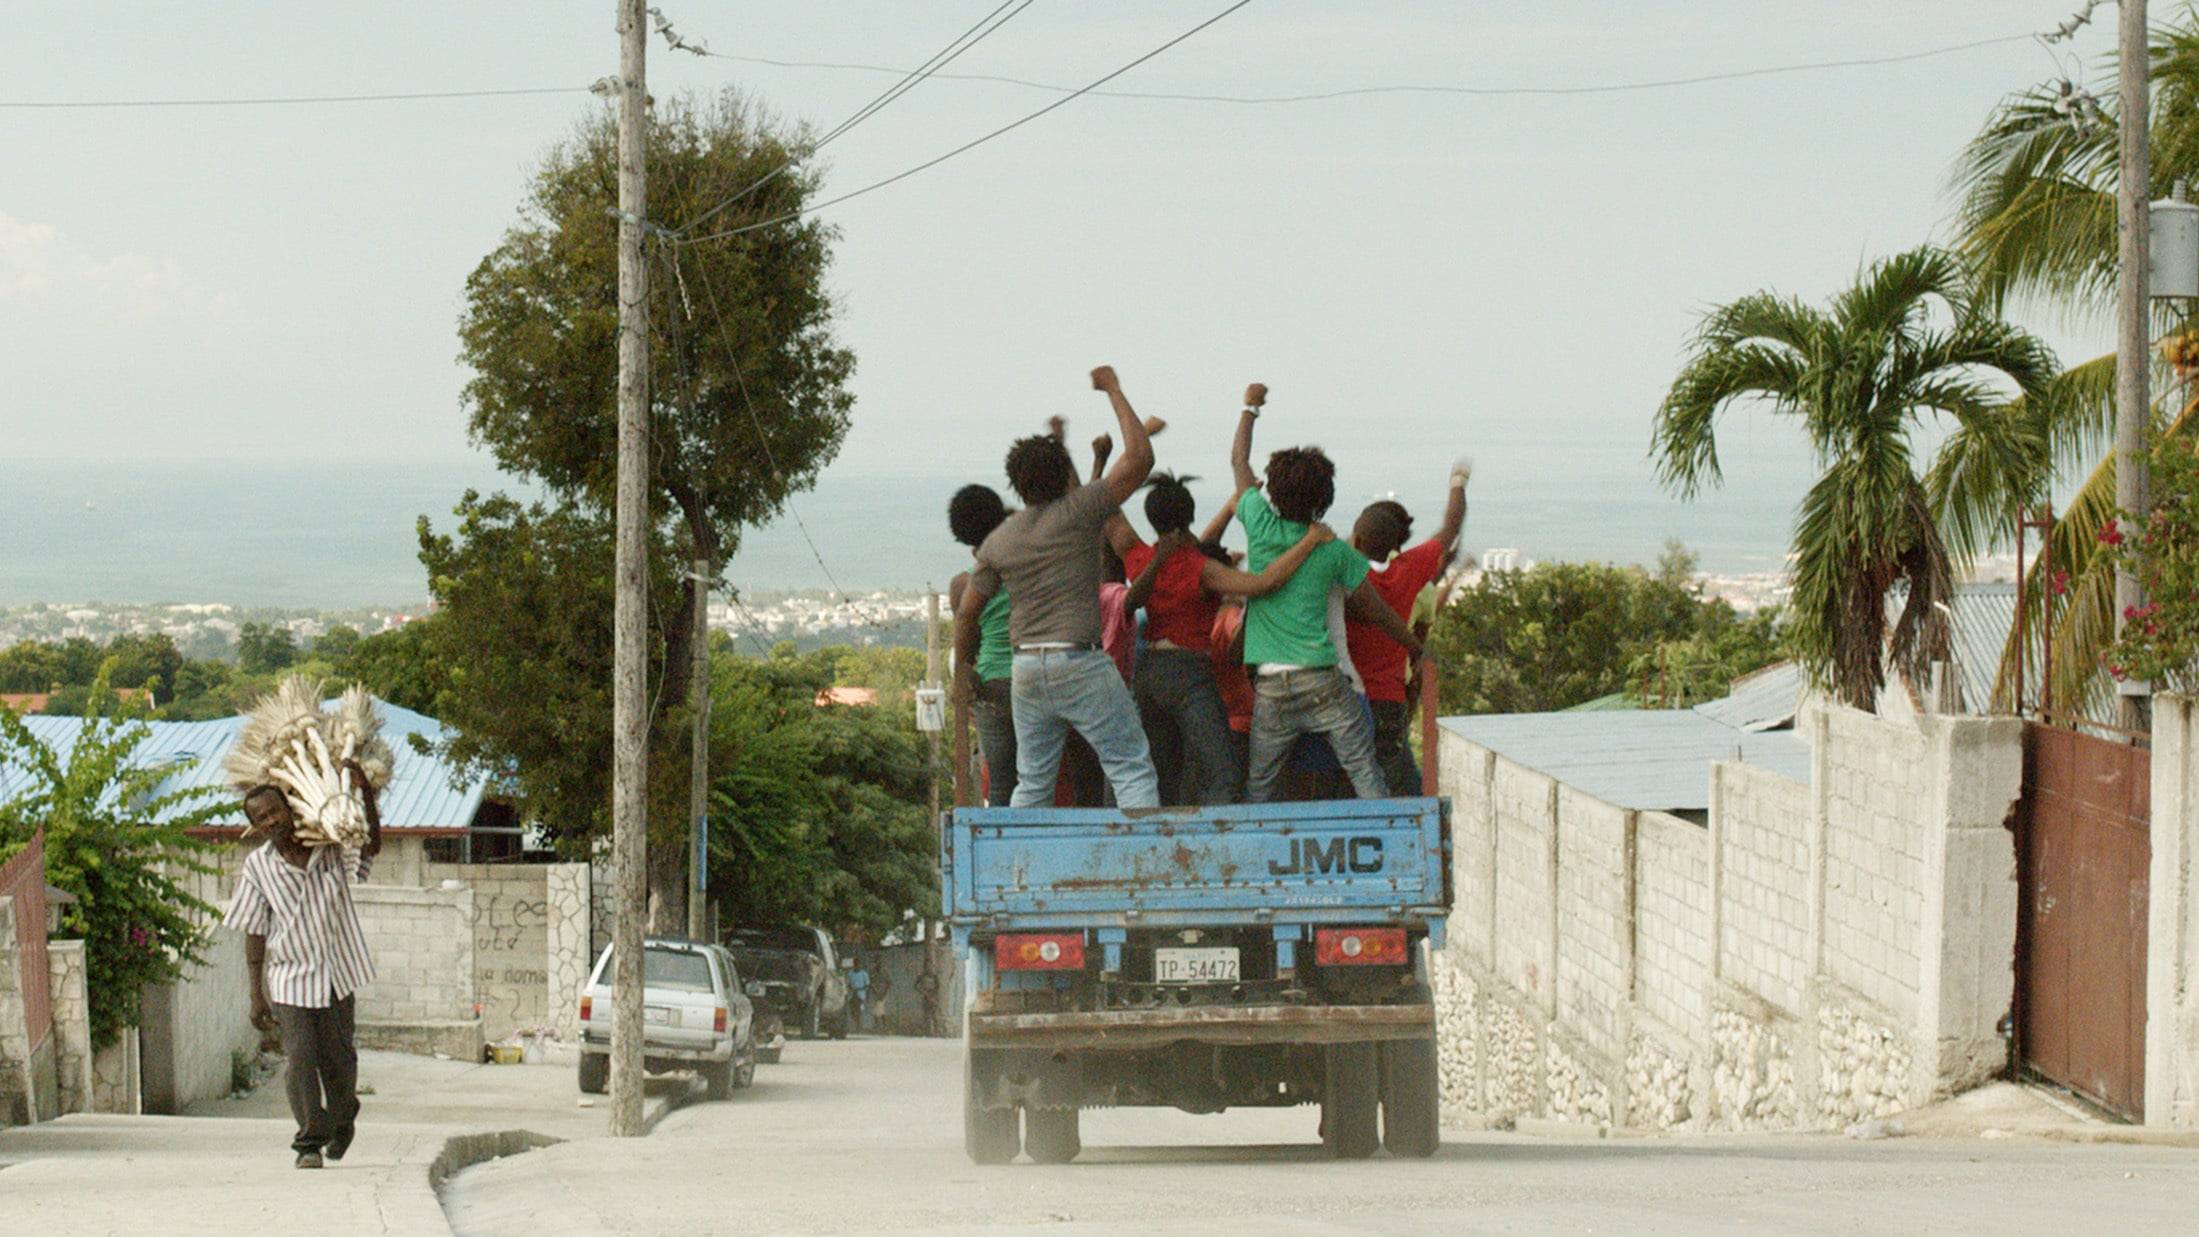 Cubierta de Port-au-Prince, dimanche 4 janvier